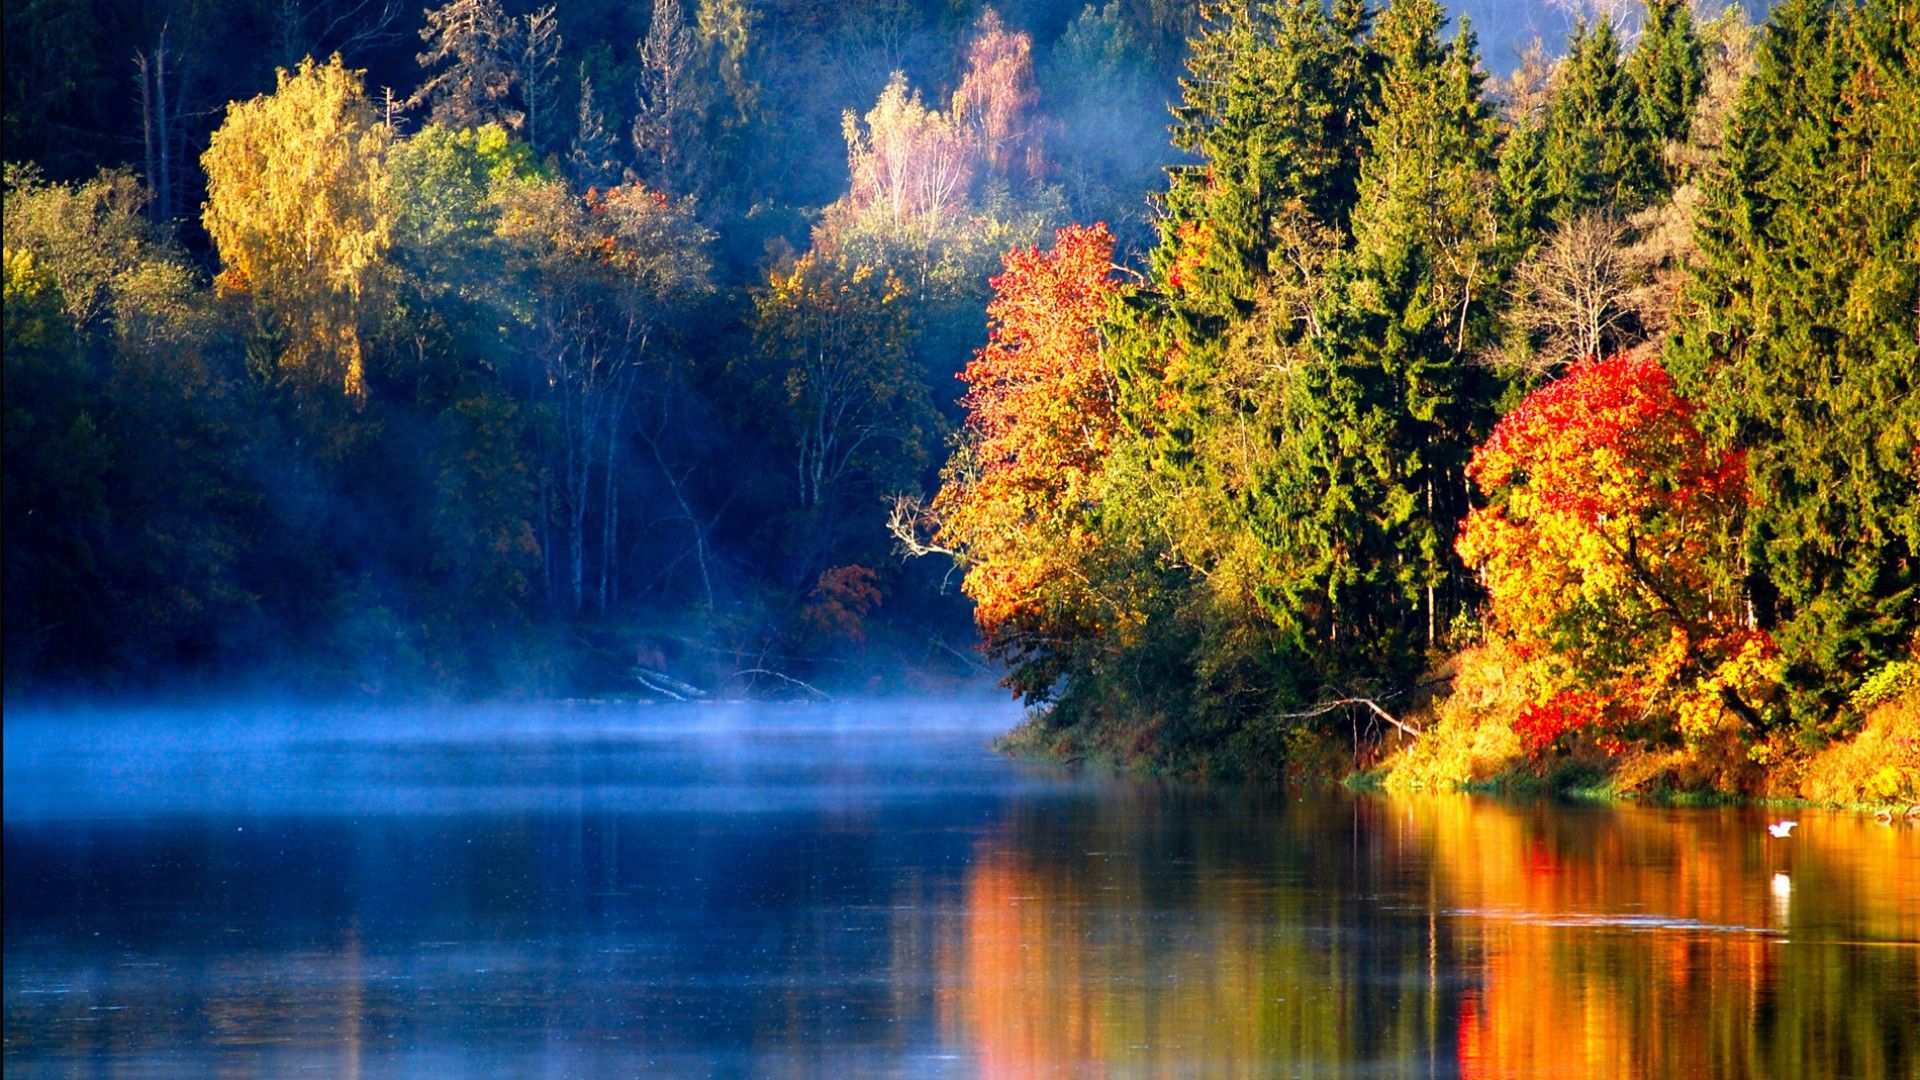 عکس طبیعت رنگارنگ پاییزی در حاشیه آب رودخانه با کیفیت عالی